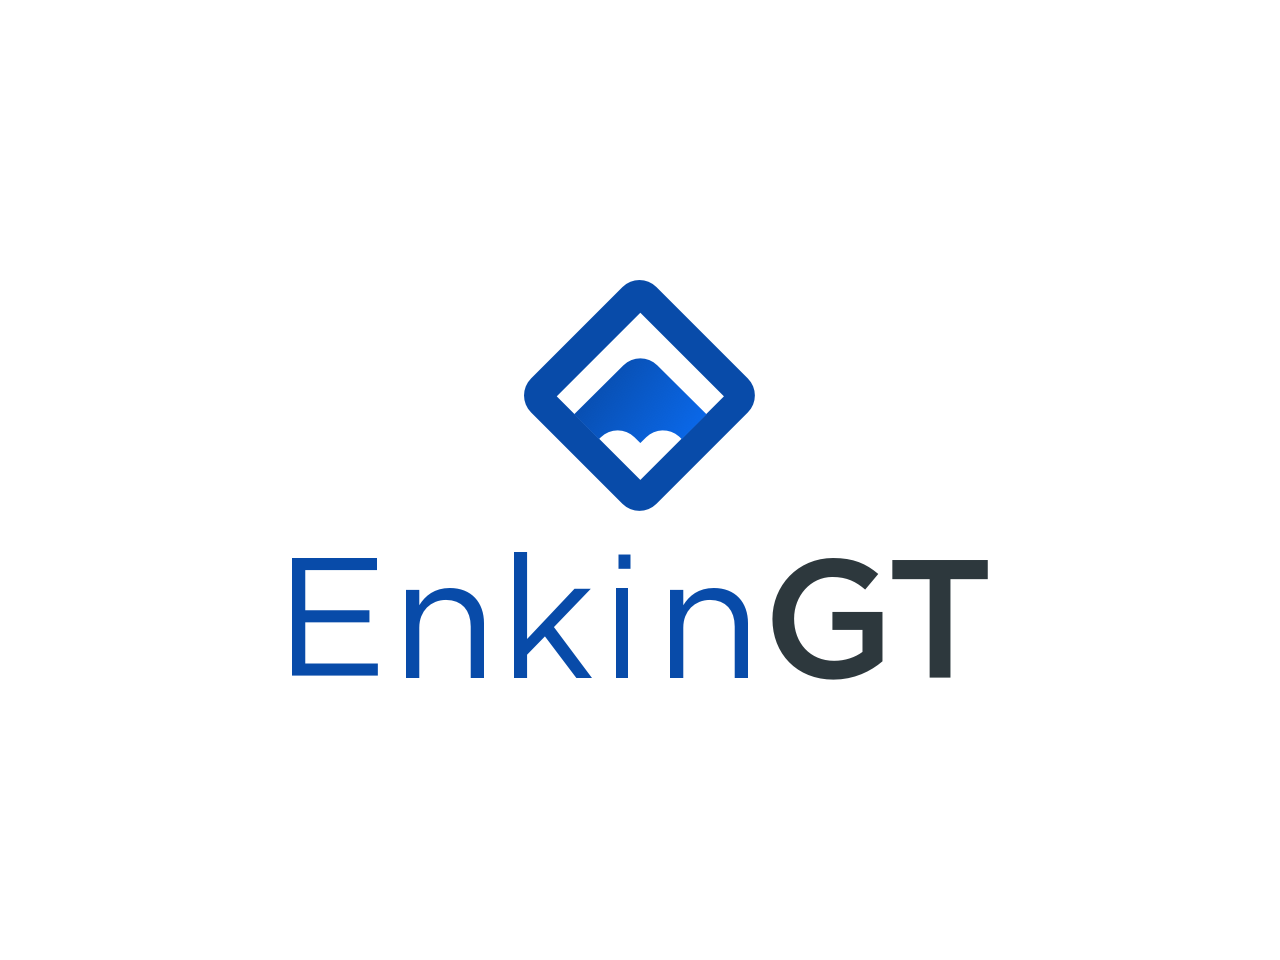 タスク管理と工数管理の両方を簡単に行える自社開発ツール『EnkinGT』を活用することで、クオリティーの高いオフショア開発が可能となっている。